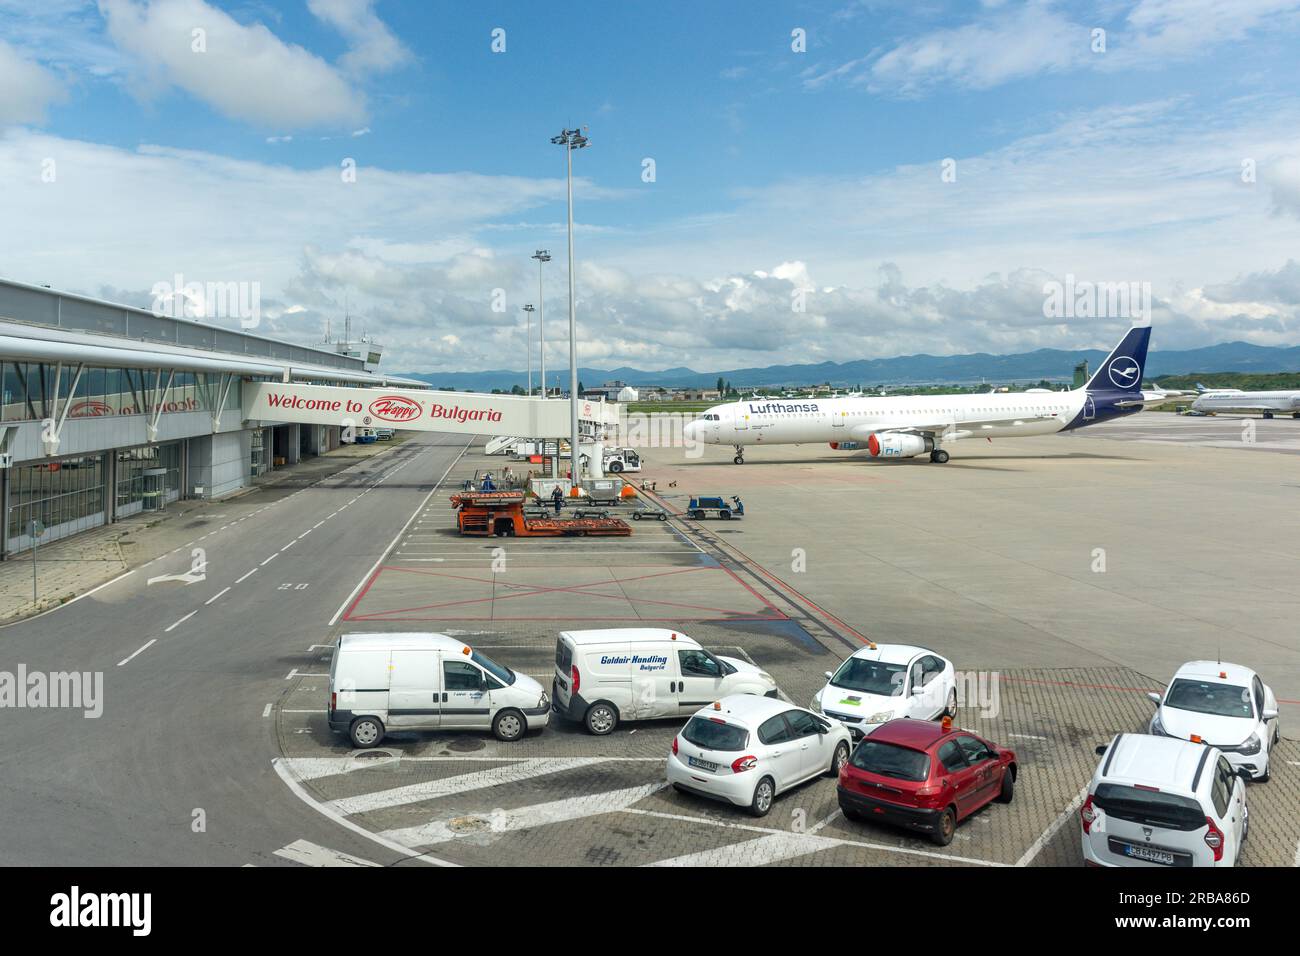 Aeroporto internazionale di Sofia, Tsarigradsko shose Blvd, Sofia, Repubblica di Bulgaria Foto Stock